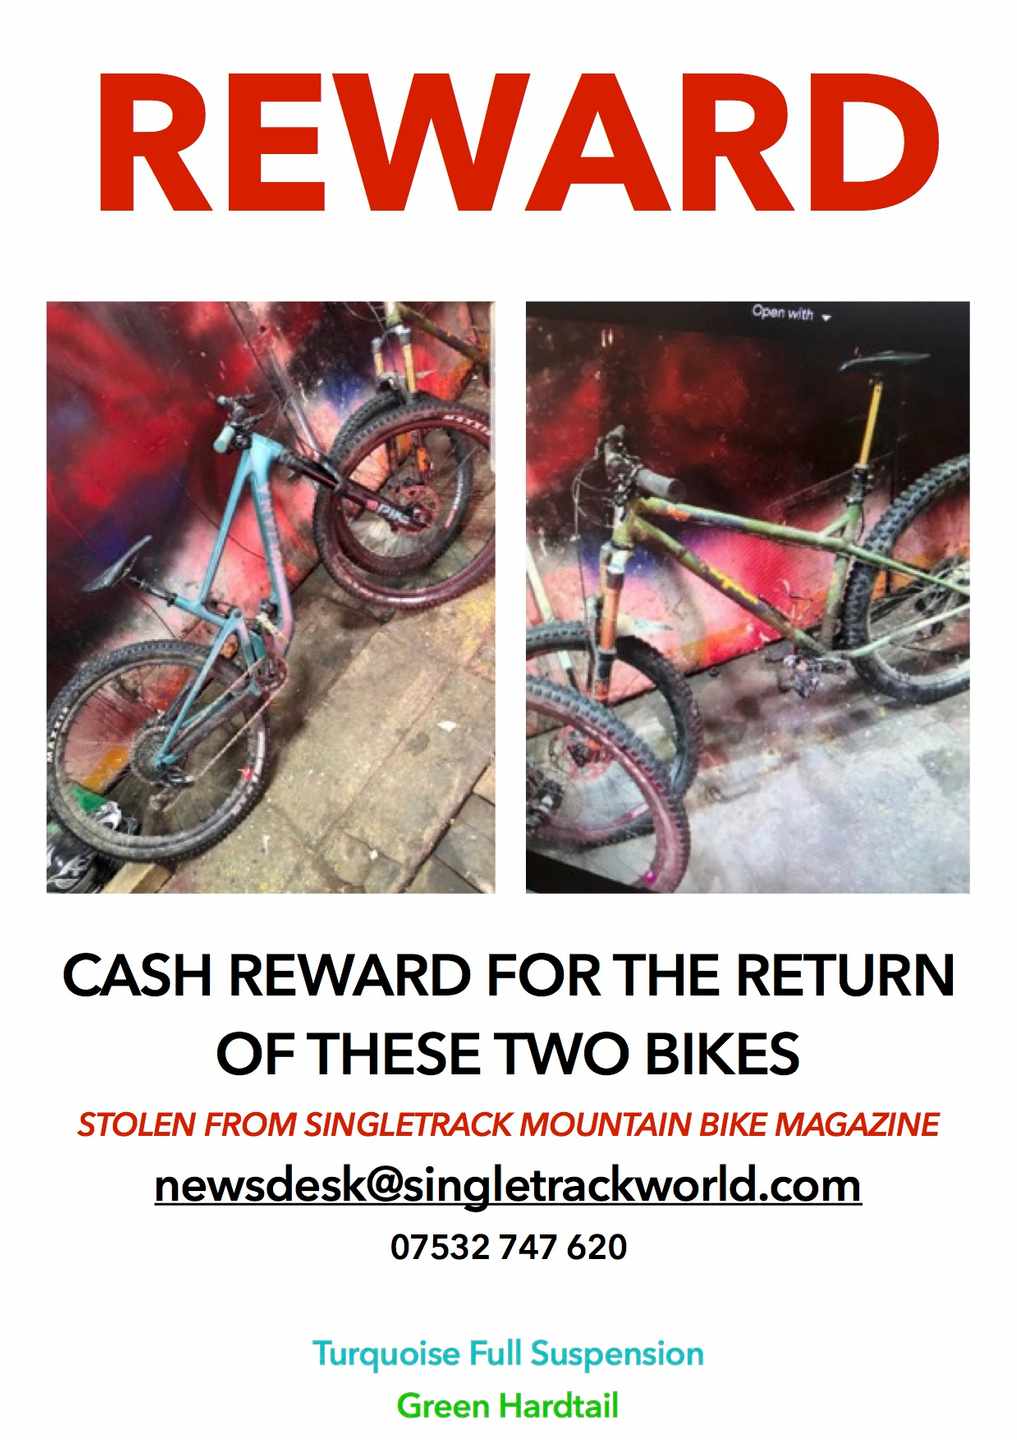 Our stolen bikes, dammit.